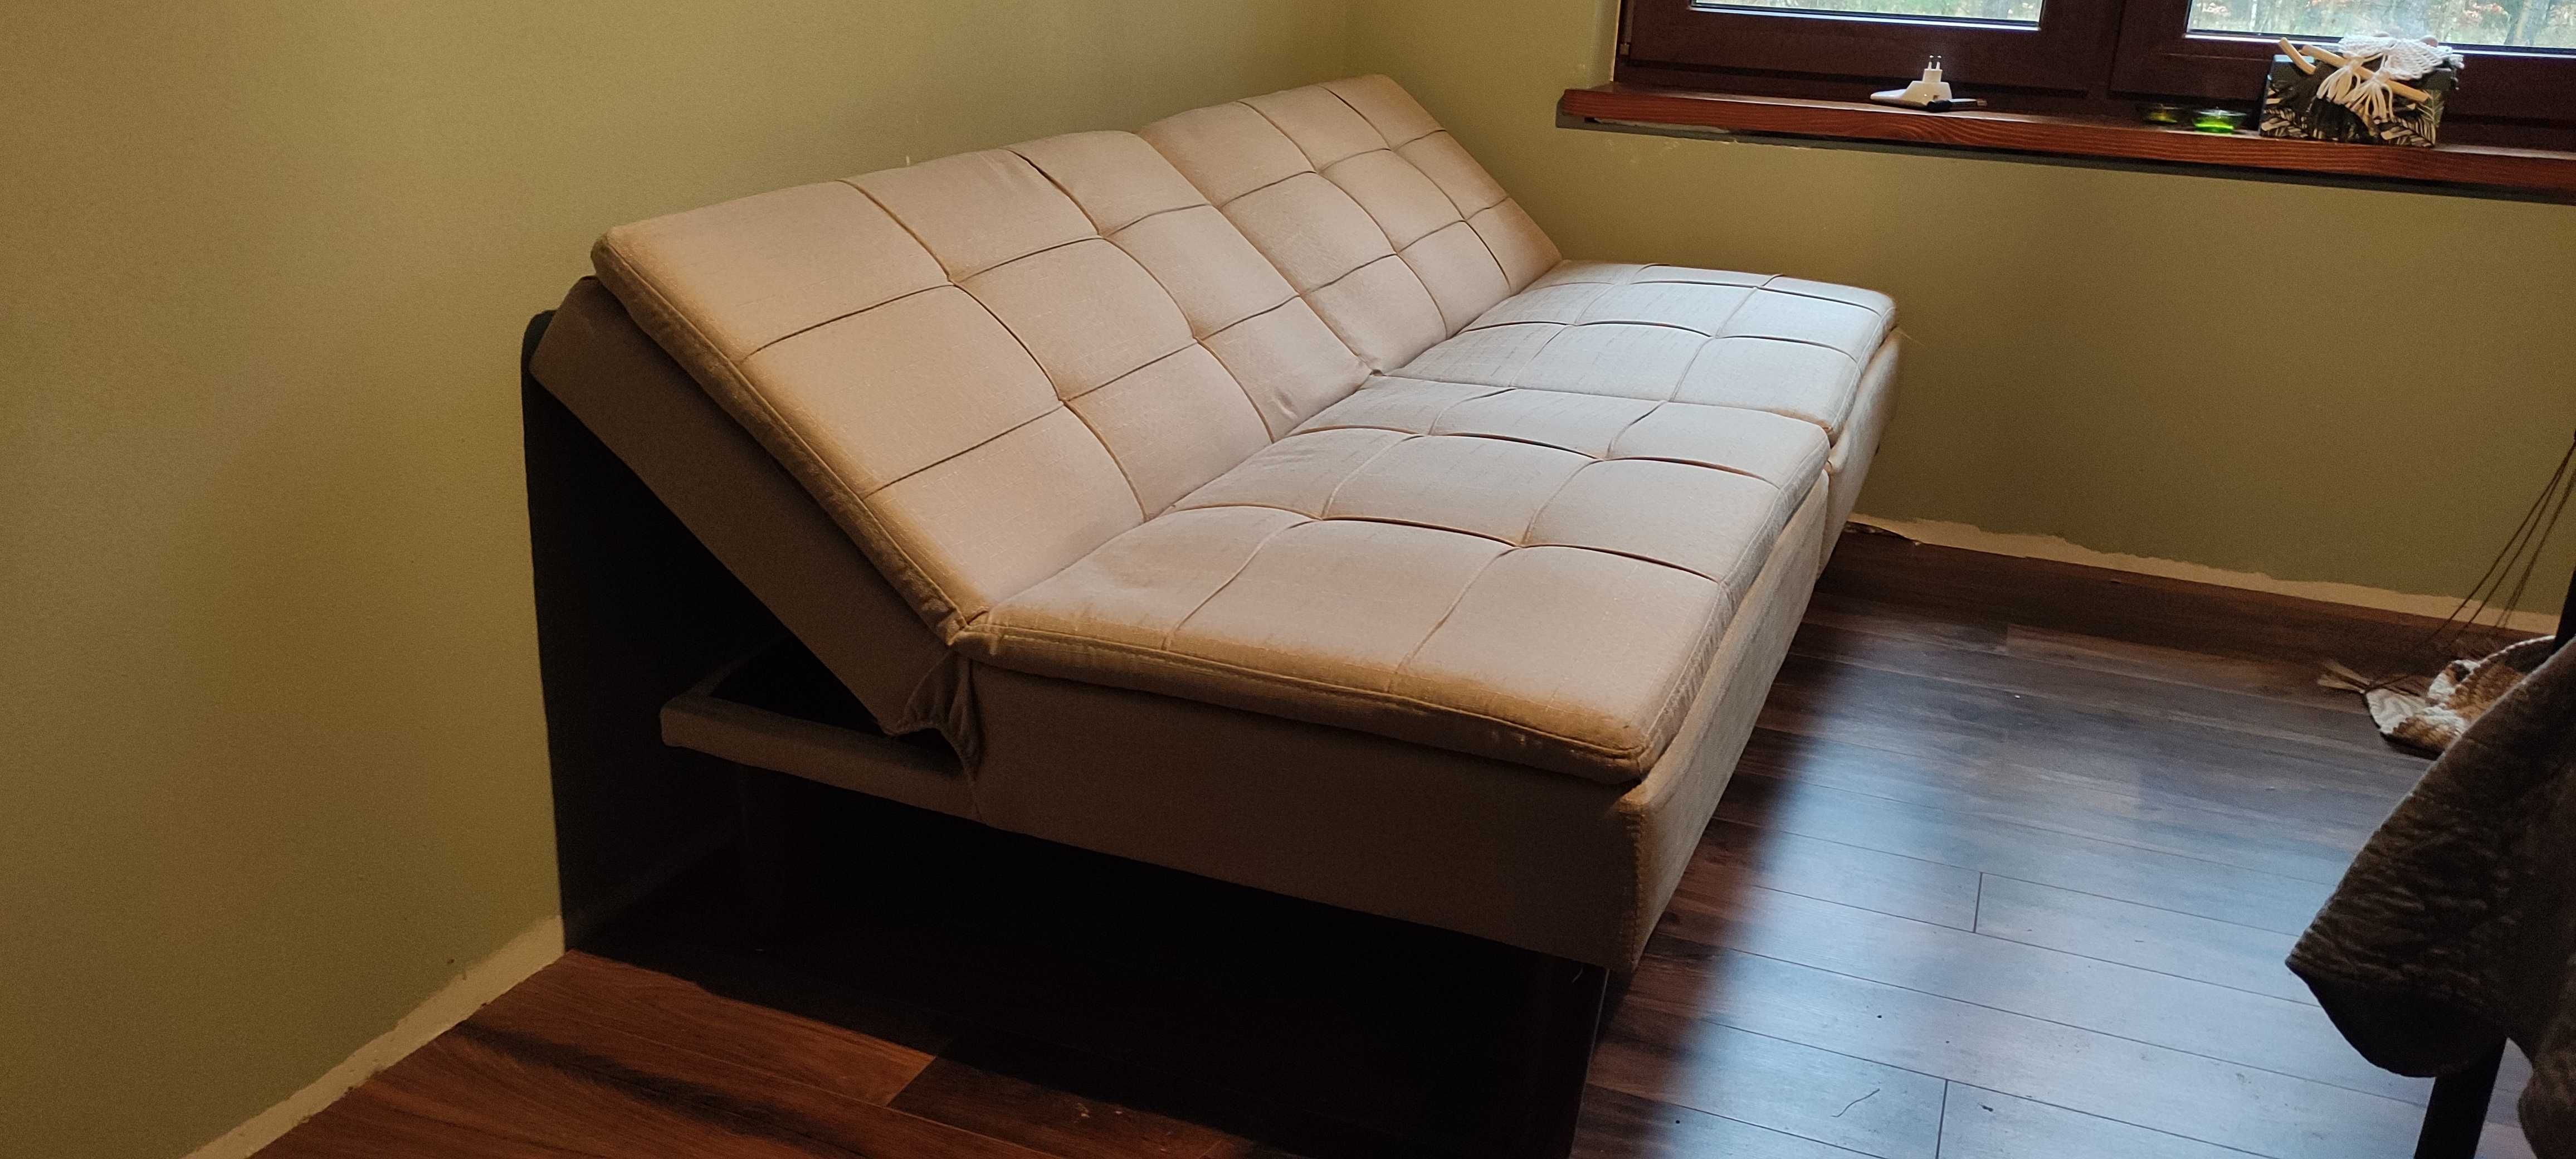 Wersalka/mała sofa